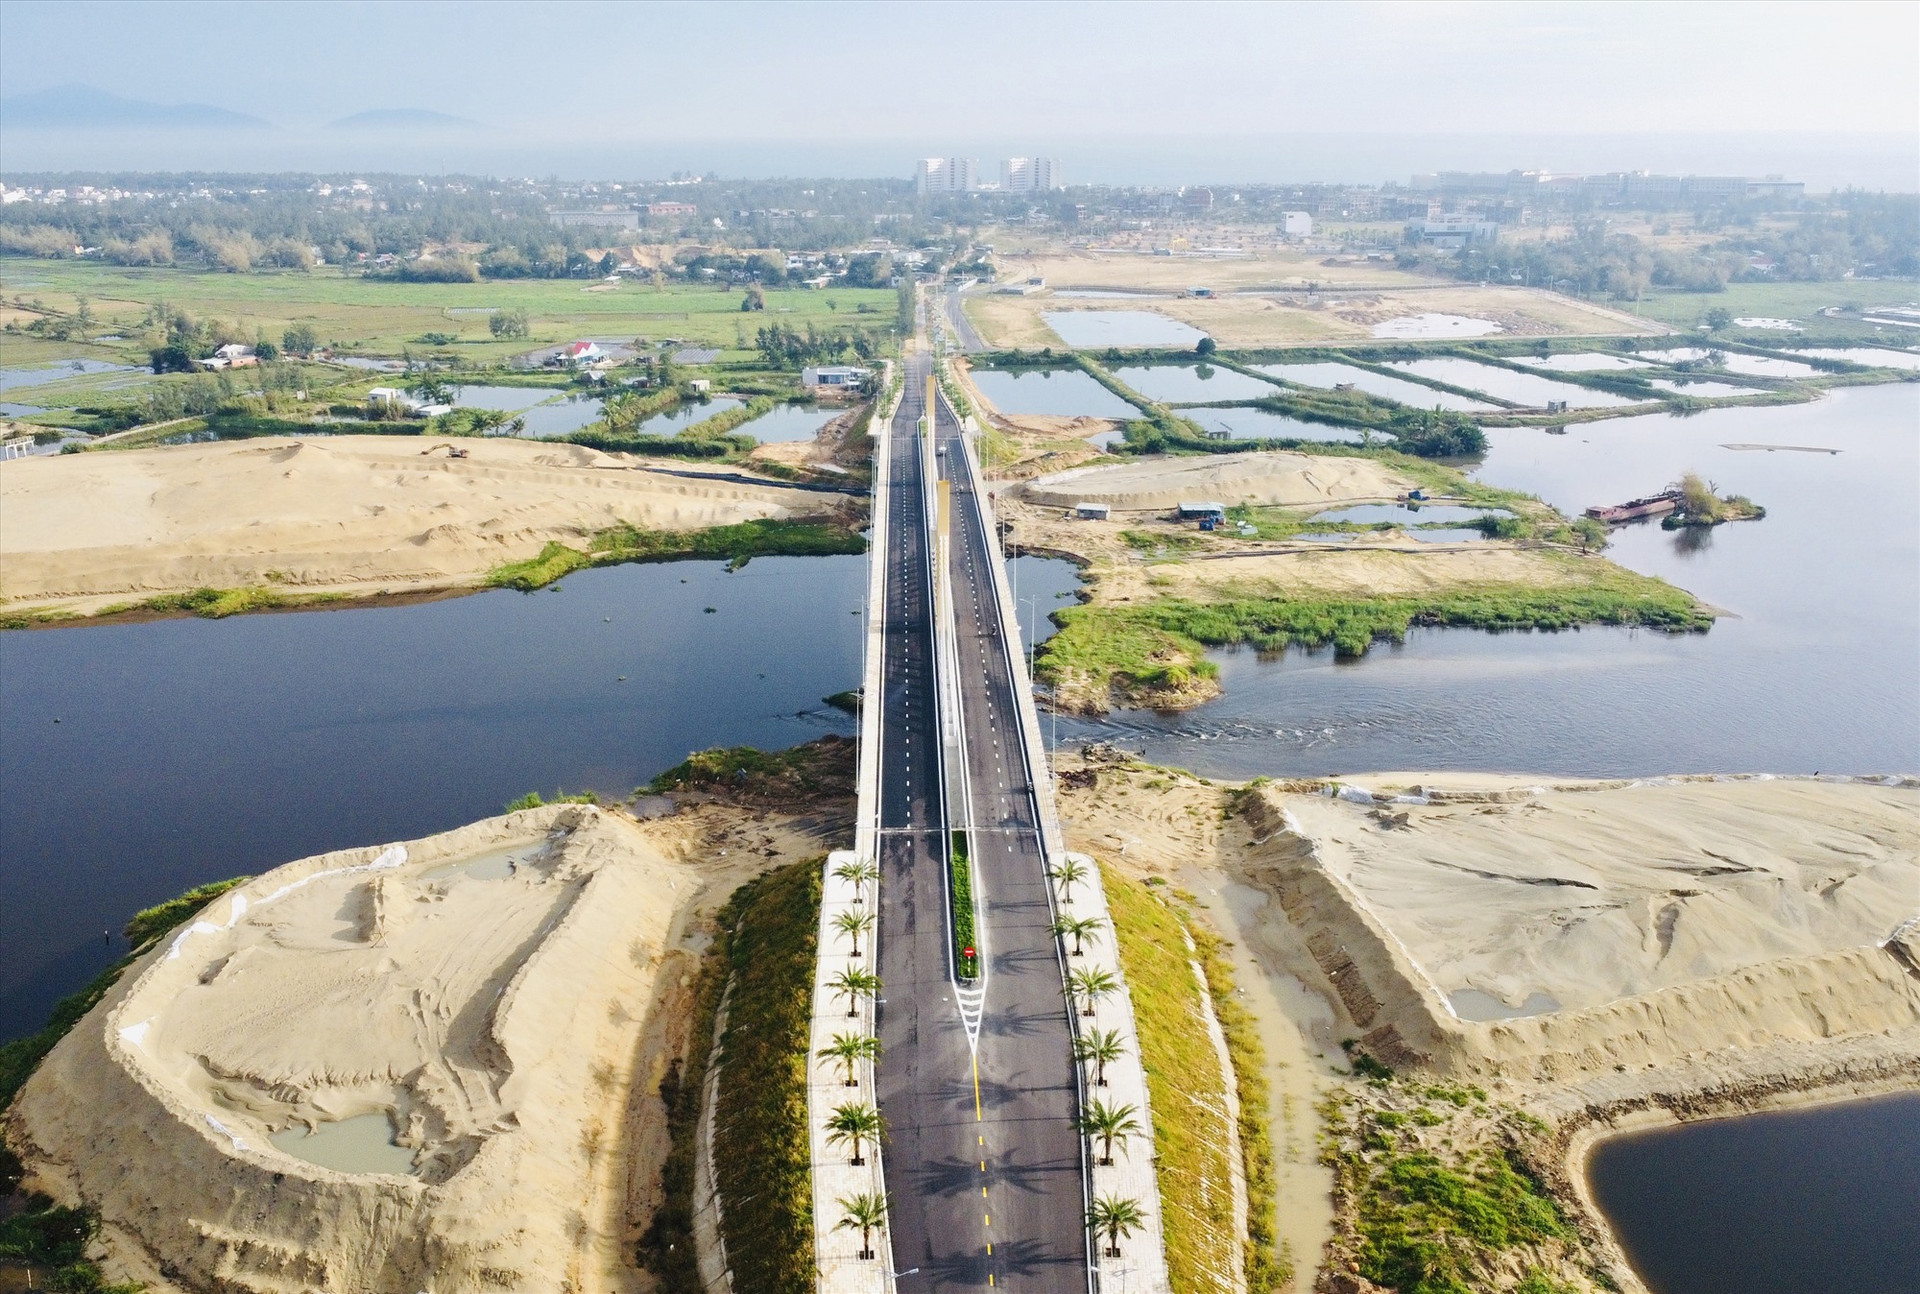 Cầu Nguyễn Duy Hiệu bắc qua sông Cổ Cò chưa có nhiều phương tiện lưu thông vì tuyến đường nối từ ĐT603B vào cầu chưa được nâng cấp, mở rộng. Ảnh: Q.T